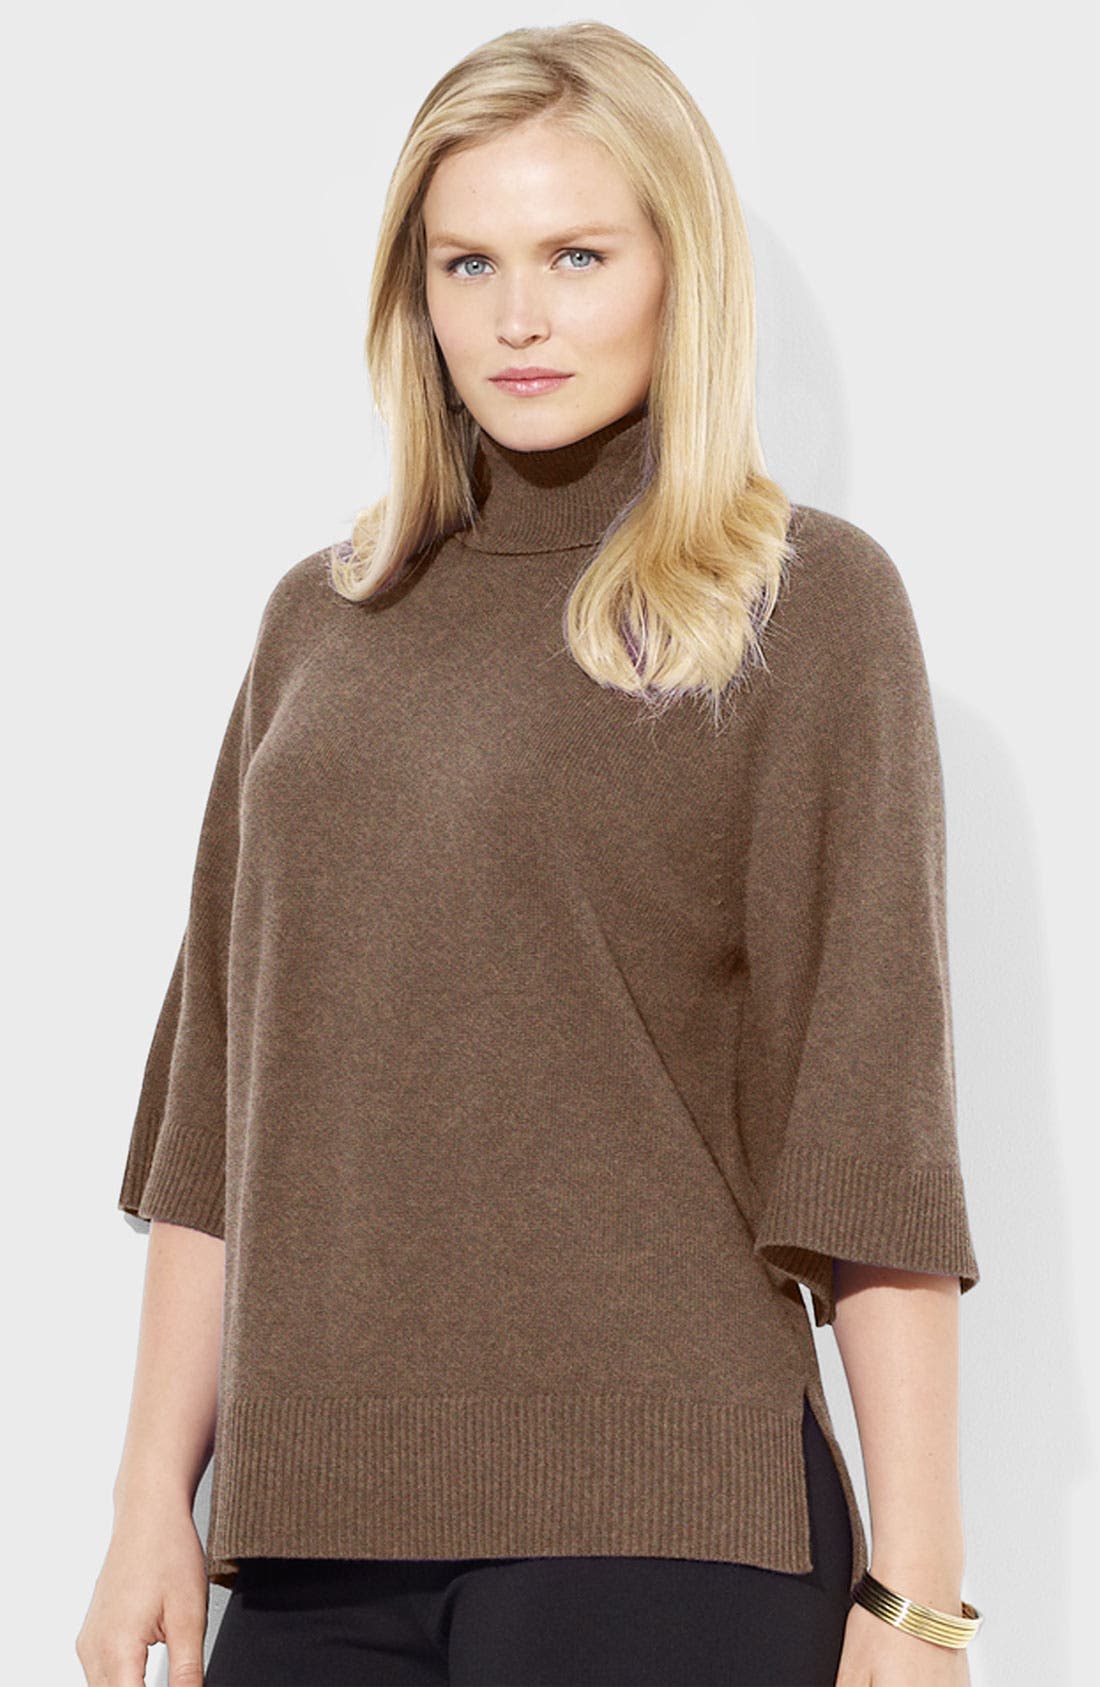 oversized ralph lauren sweater